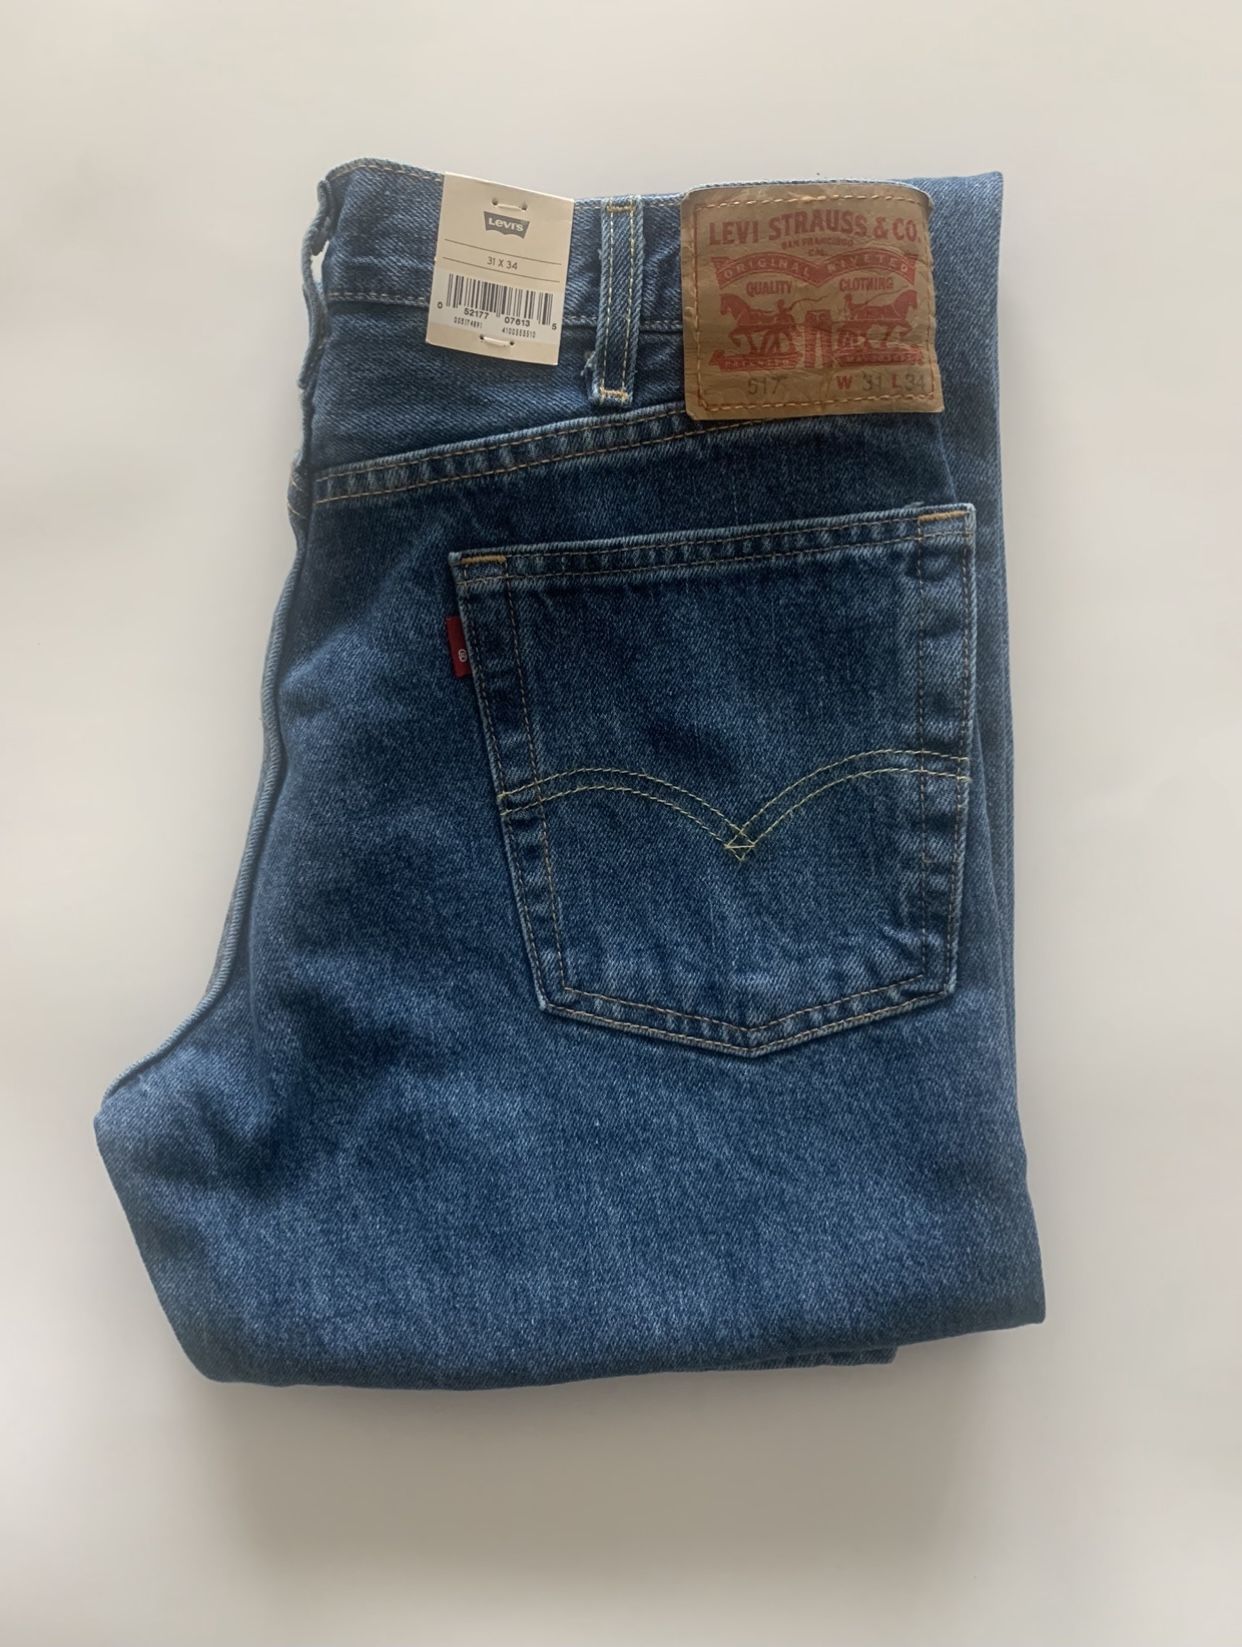 Levi’s 517 Jeans 